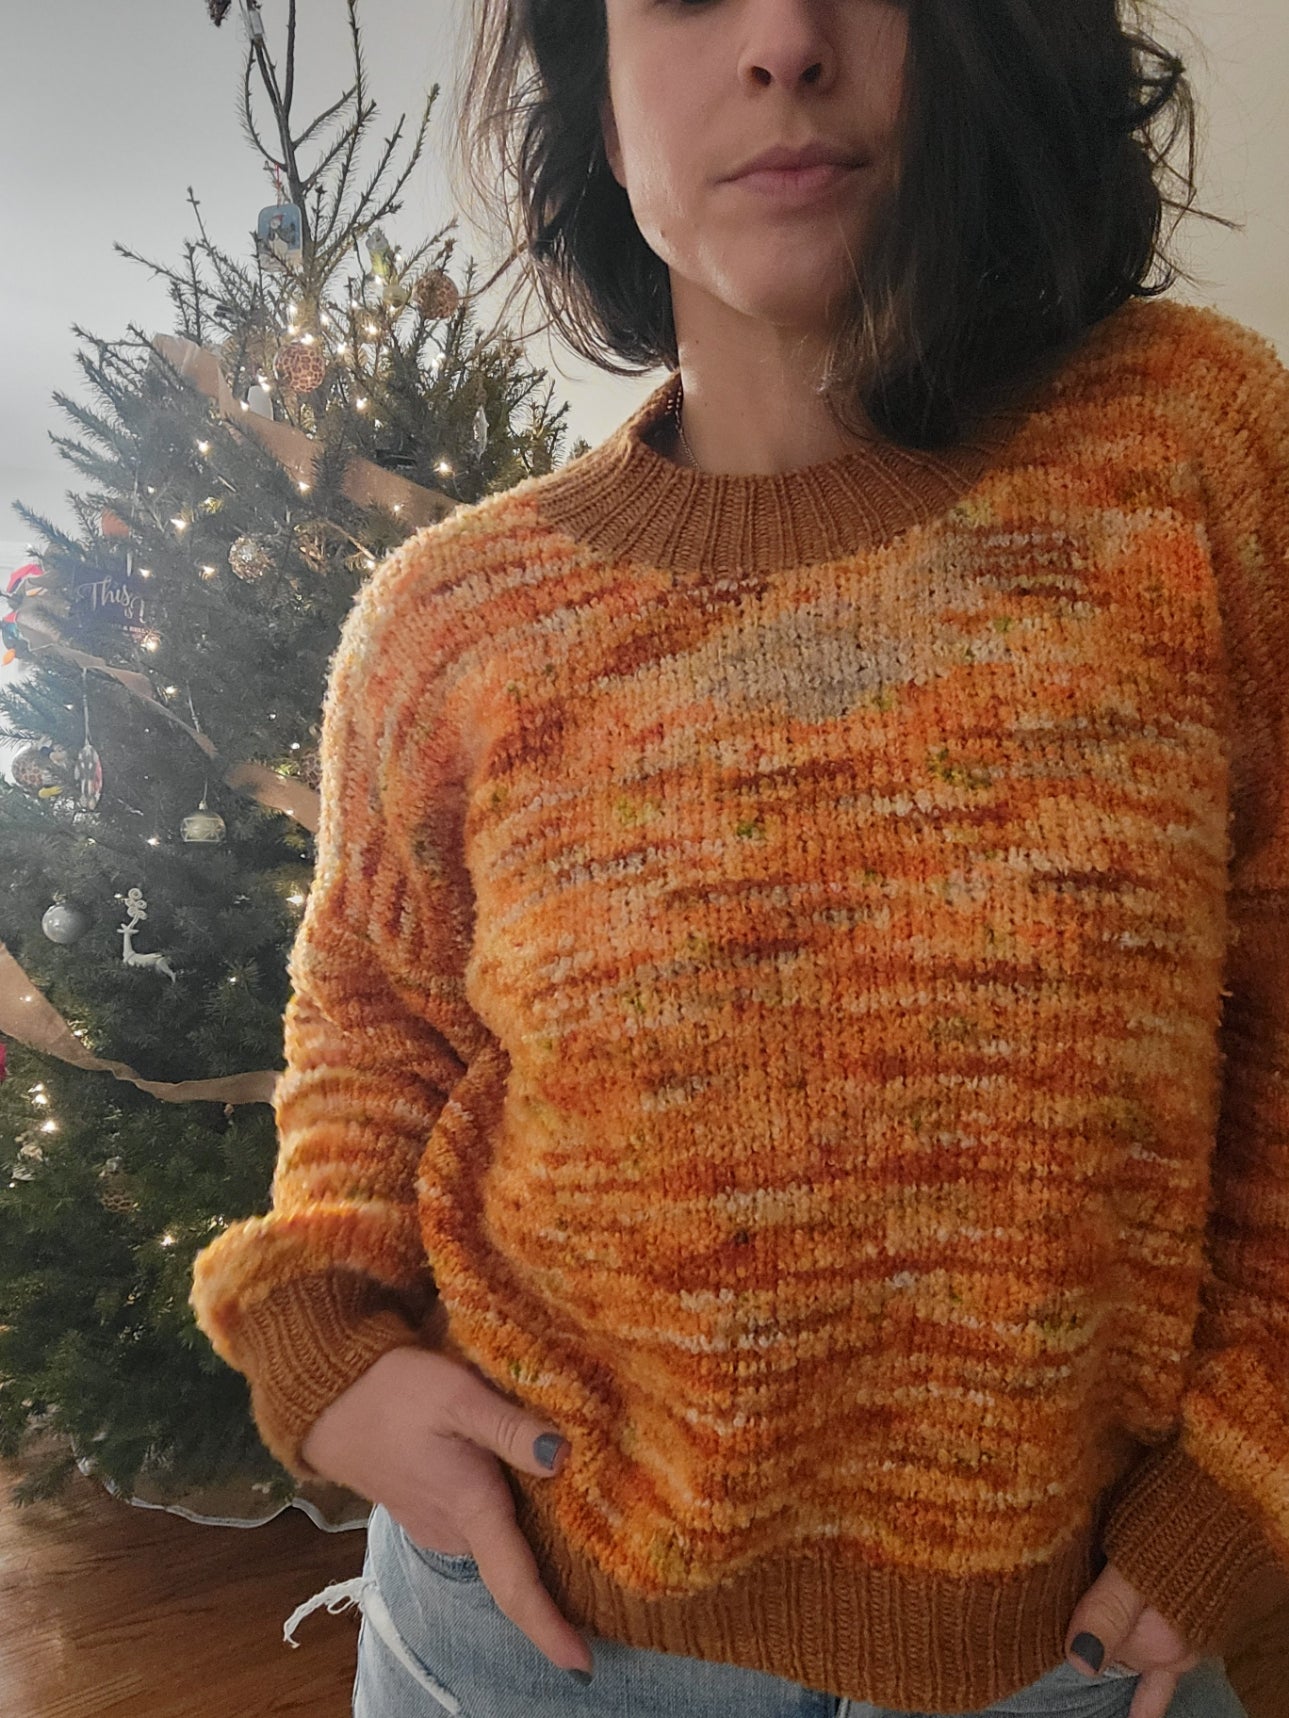 Second Ave Sweatshirt - Knitting Pattern